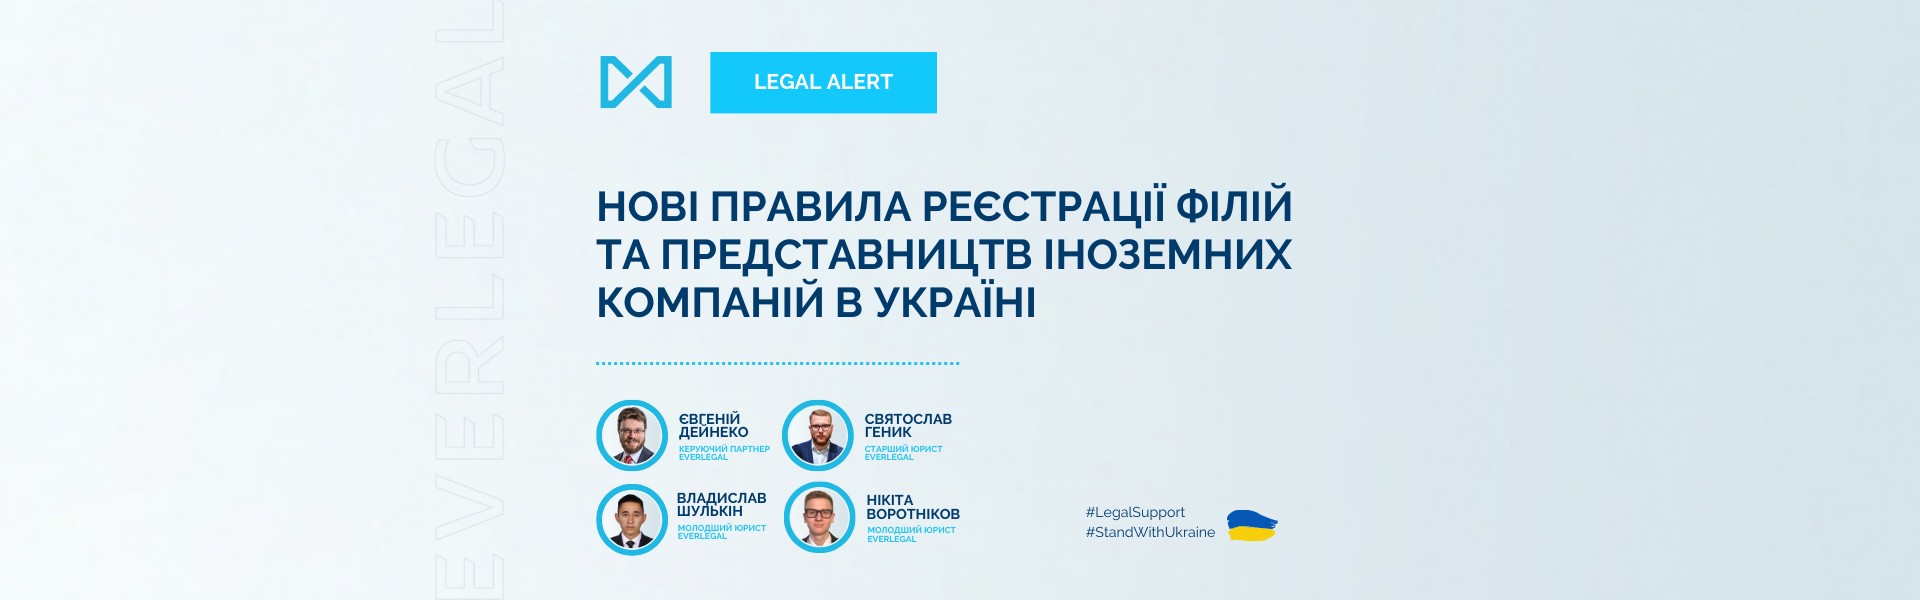 Нові правила реєстрації філій та представництв іноземних компаній в Україні